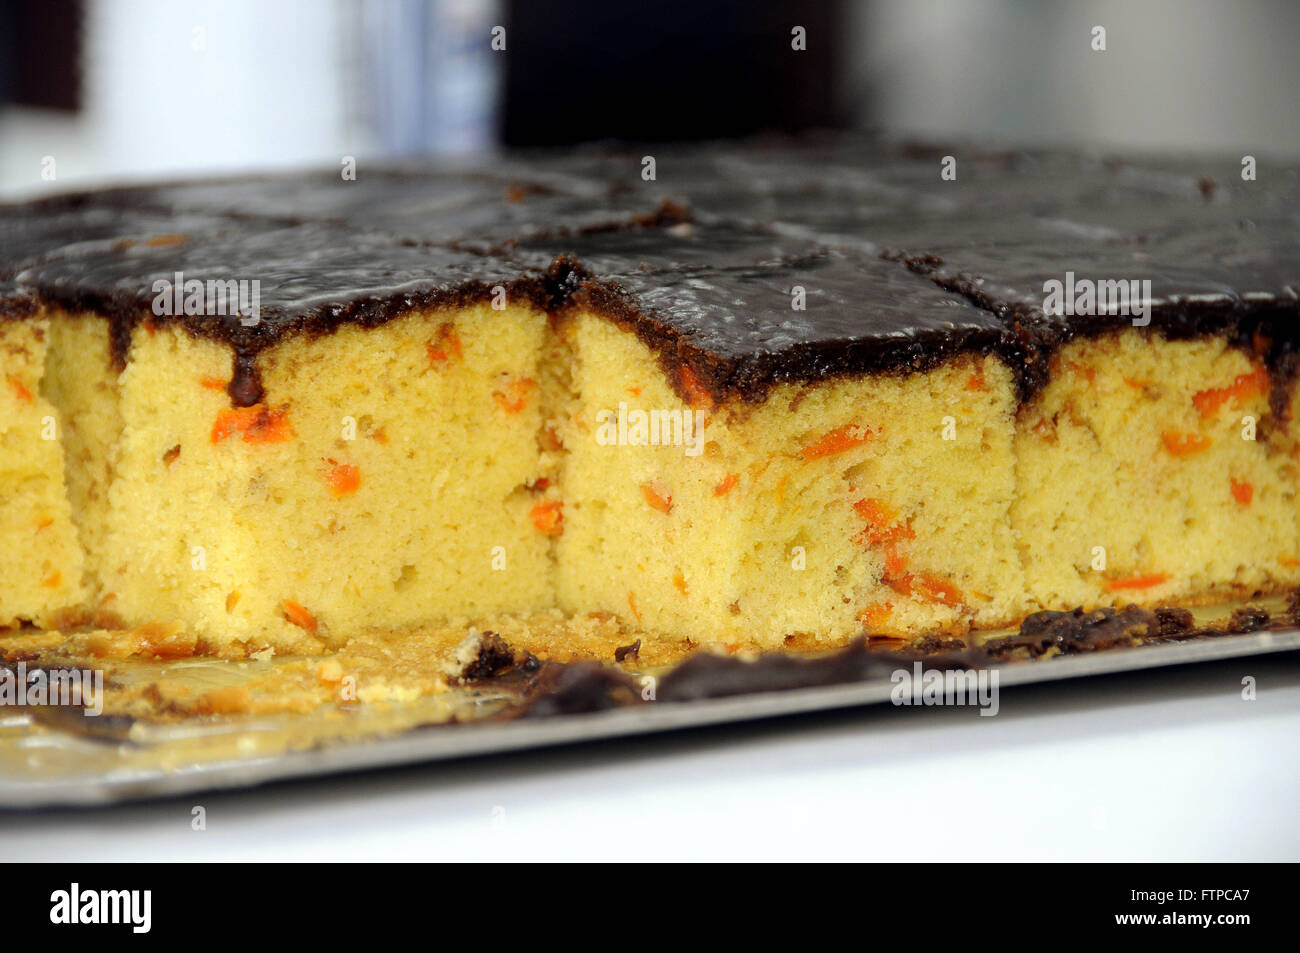 Pastel de zanahoria con cobertura de chocolate Foto de stock